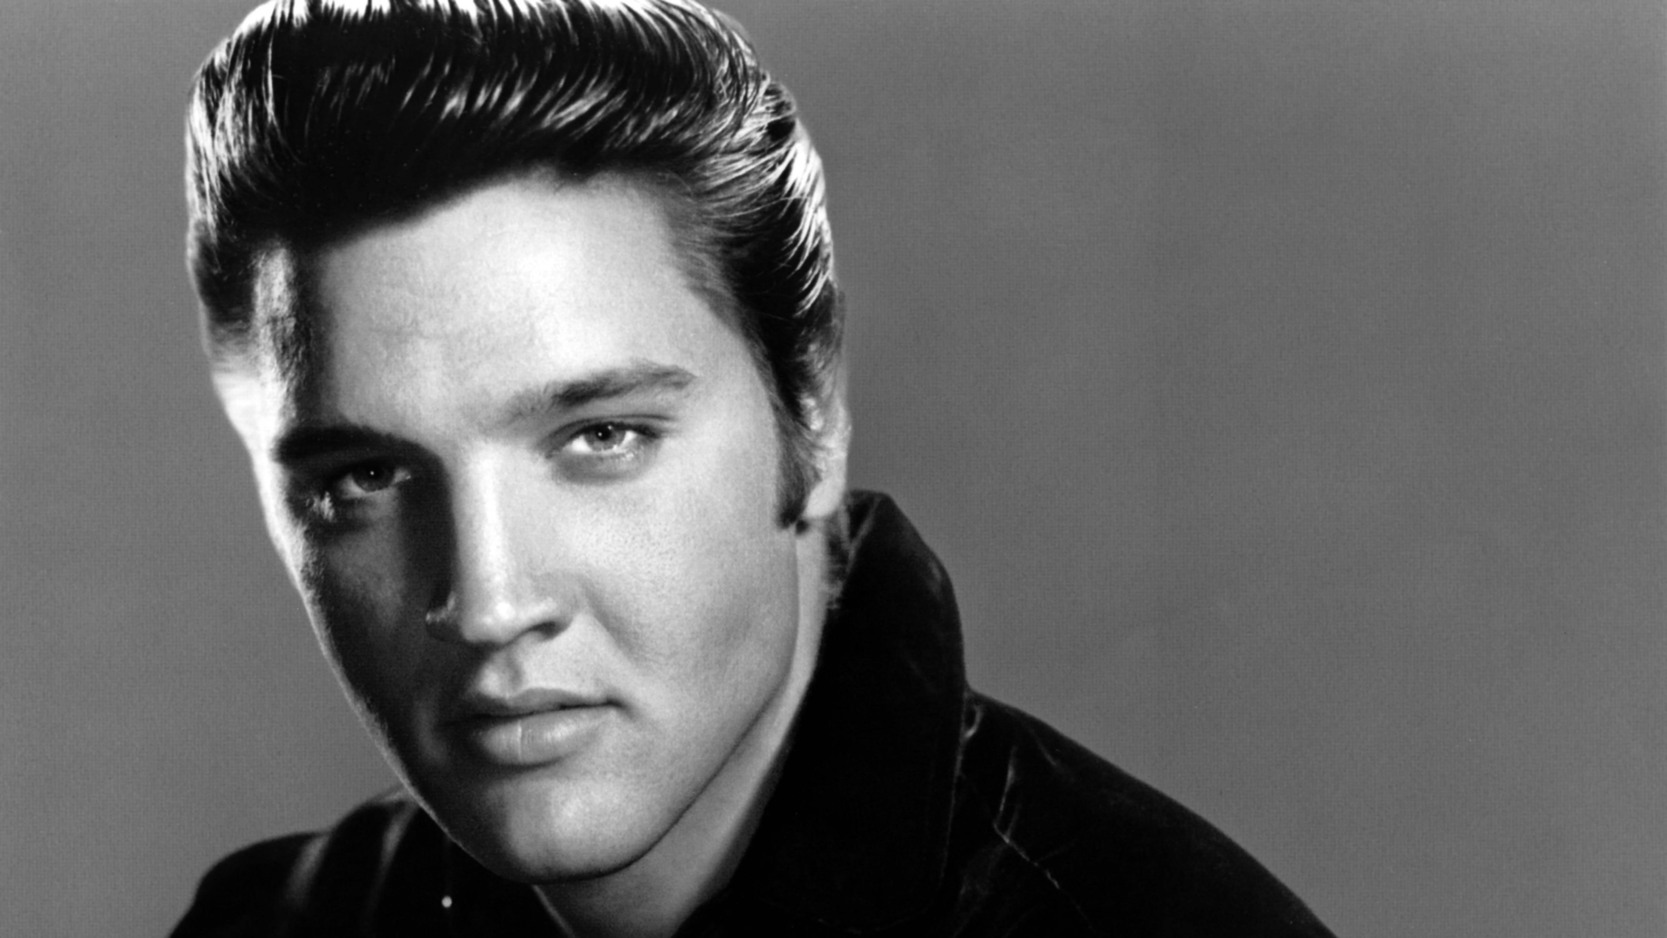 Singer Who Sounds Like Elvis